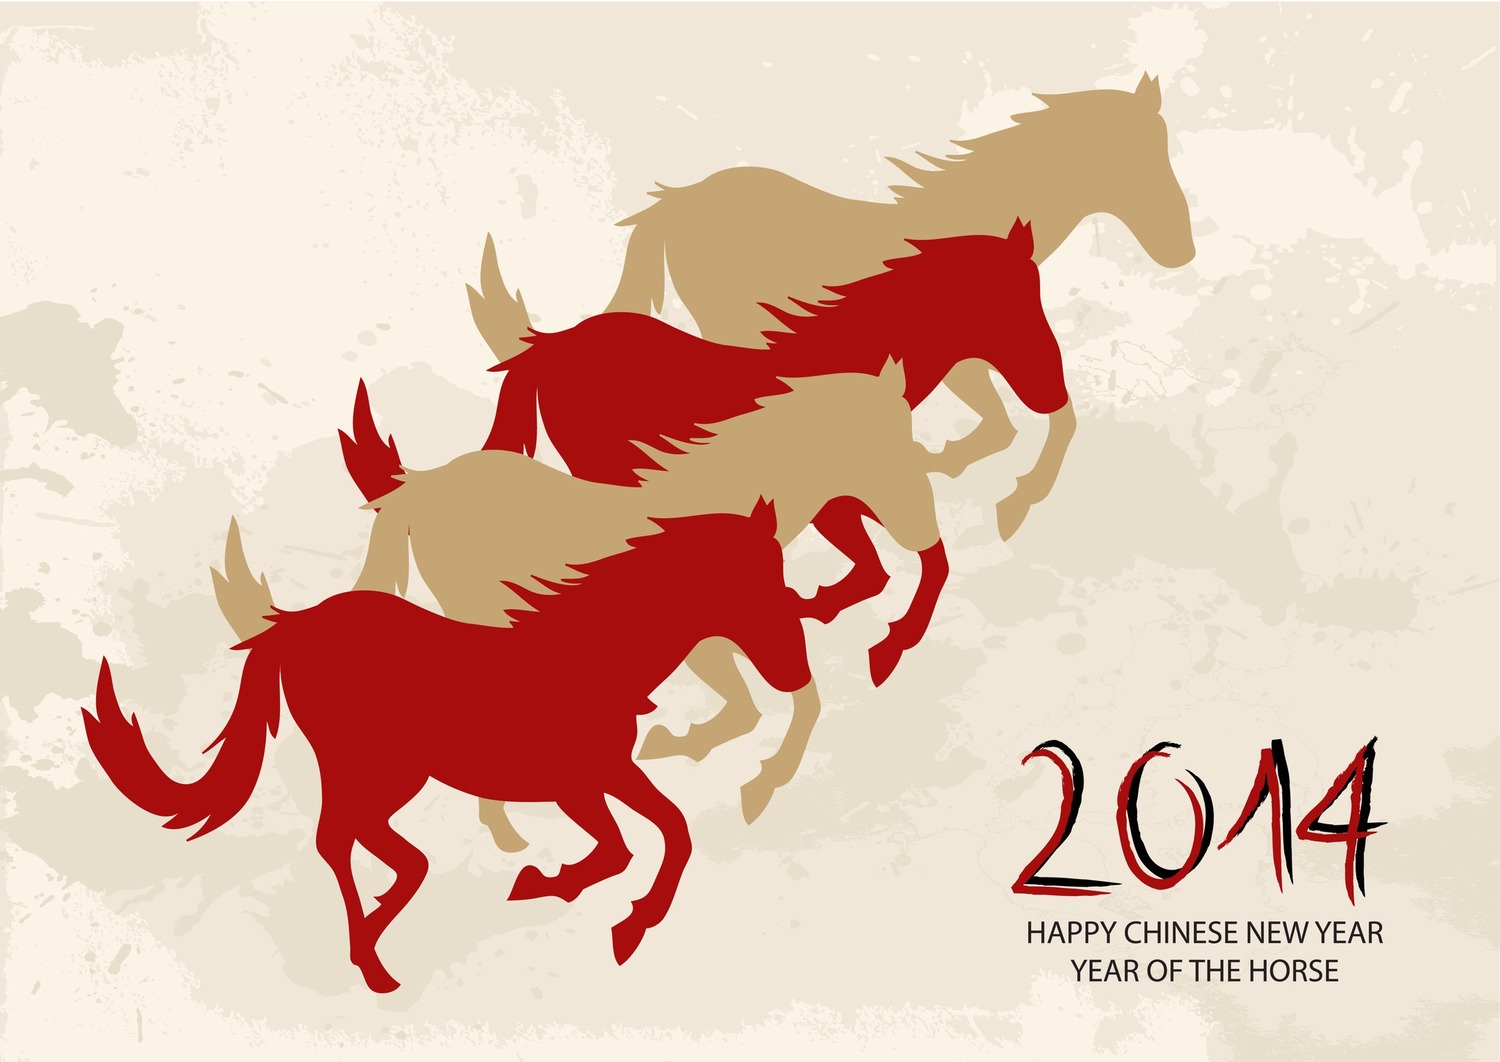 Хорс год. Год лошади 2014. Новогодний баннер кони. Китайская Новогодняя лошадка. Конь Азия.